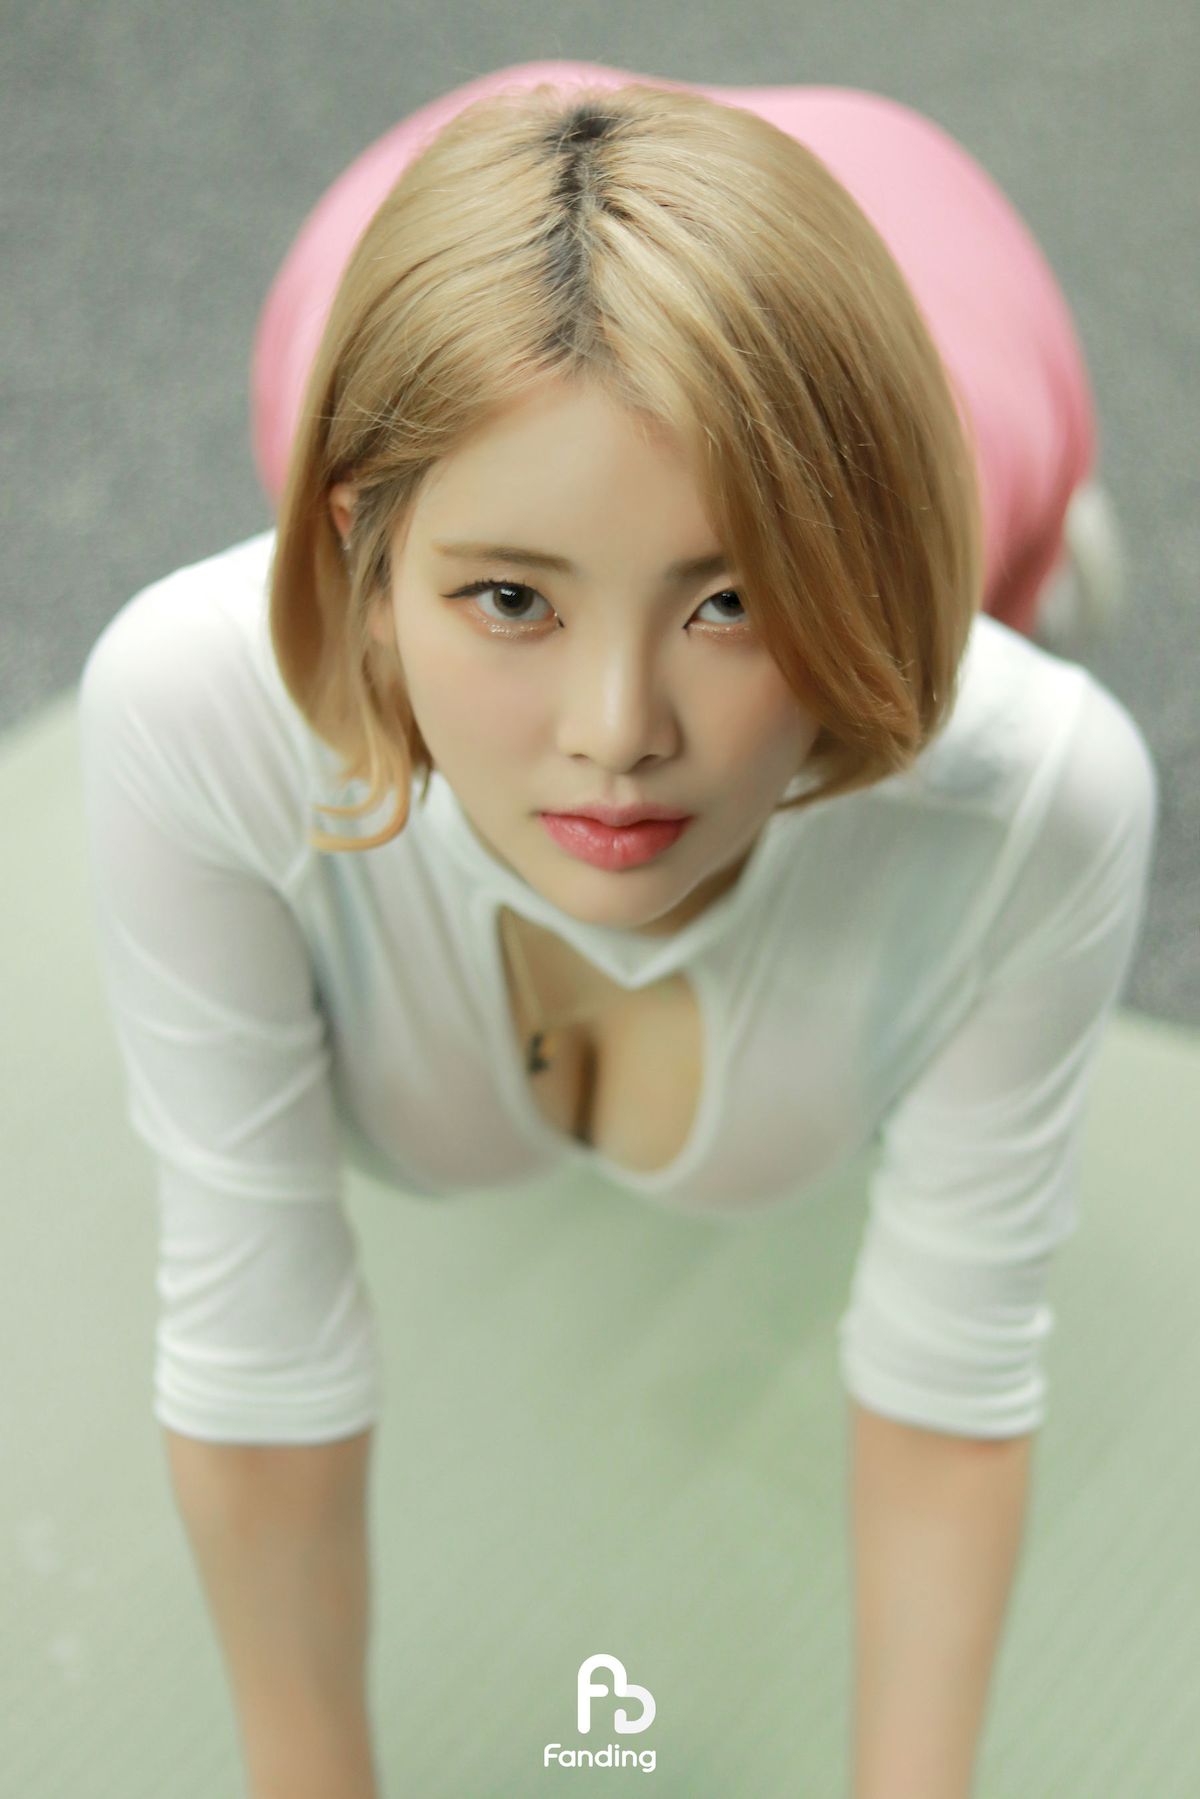 韩国美女Yeon一头短发运动服饰健身女孩写真